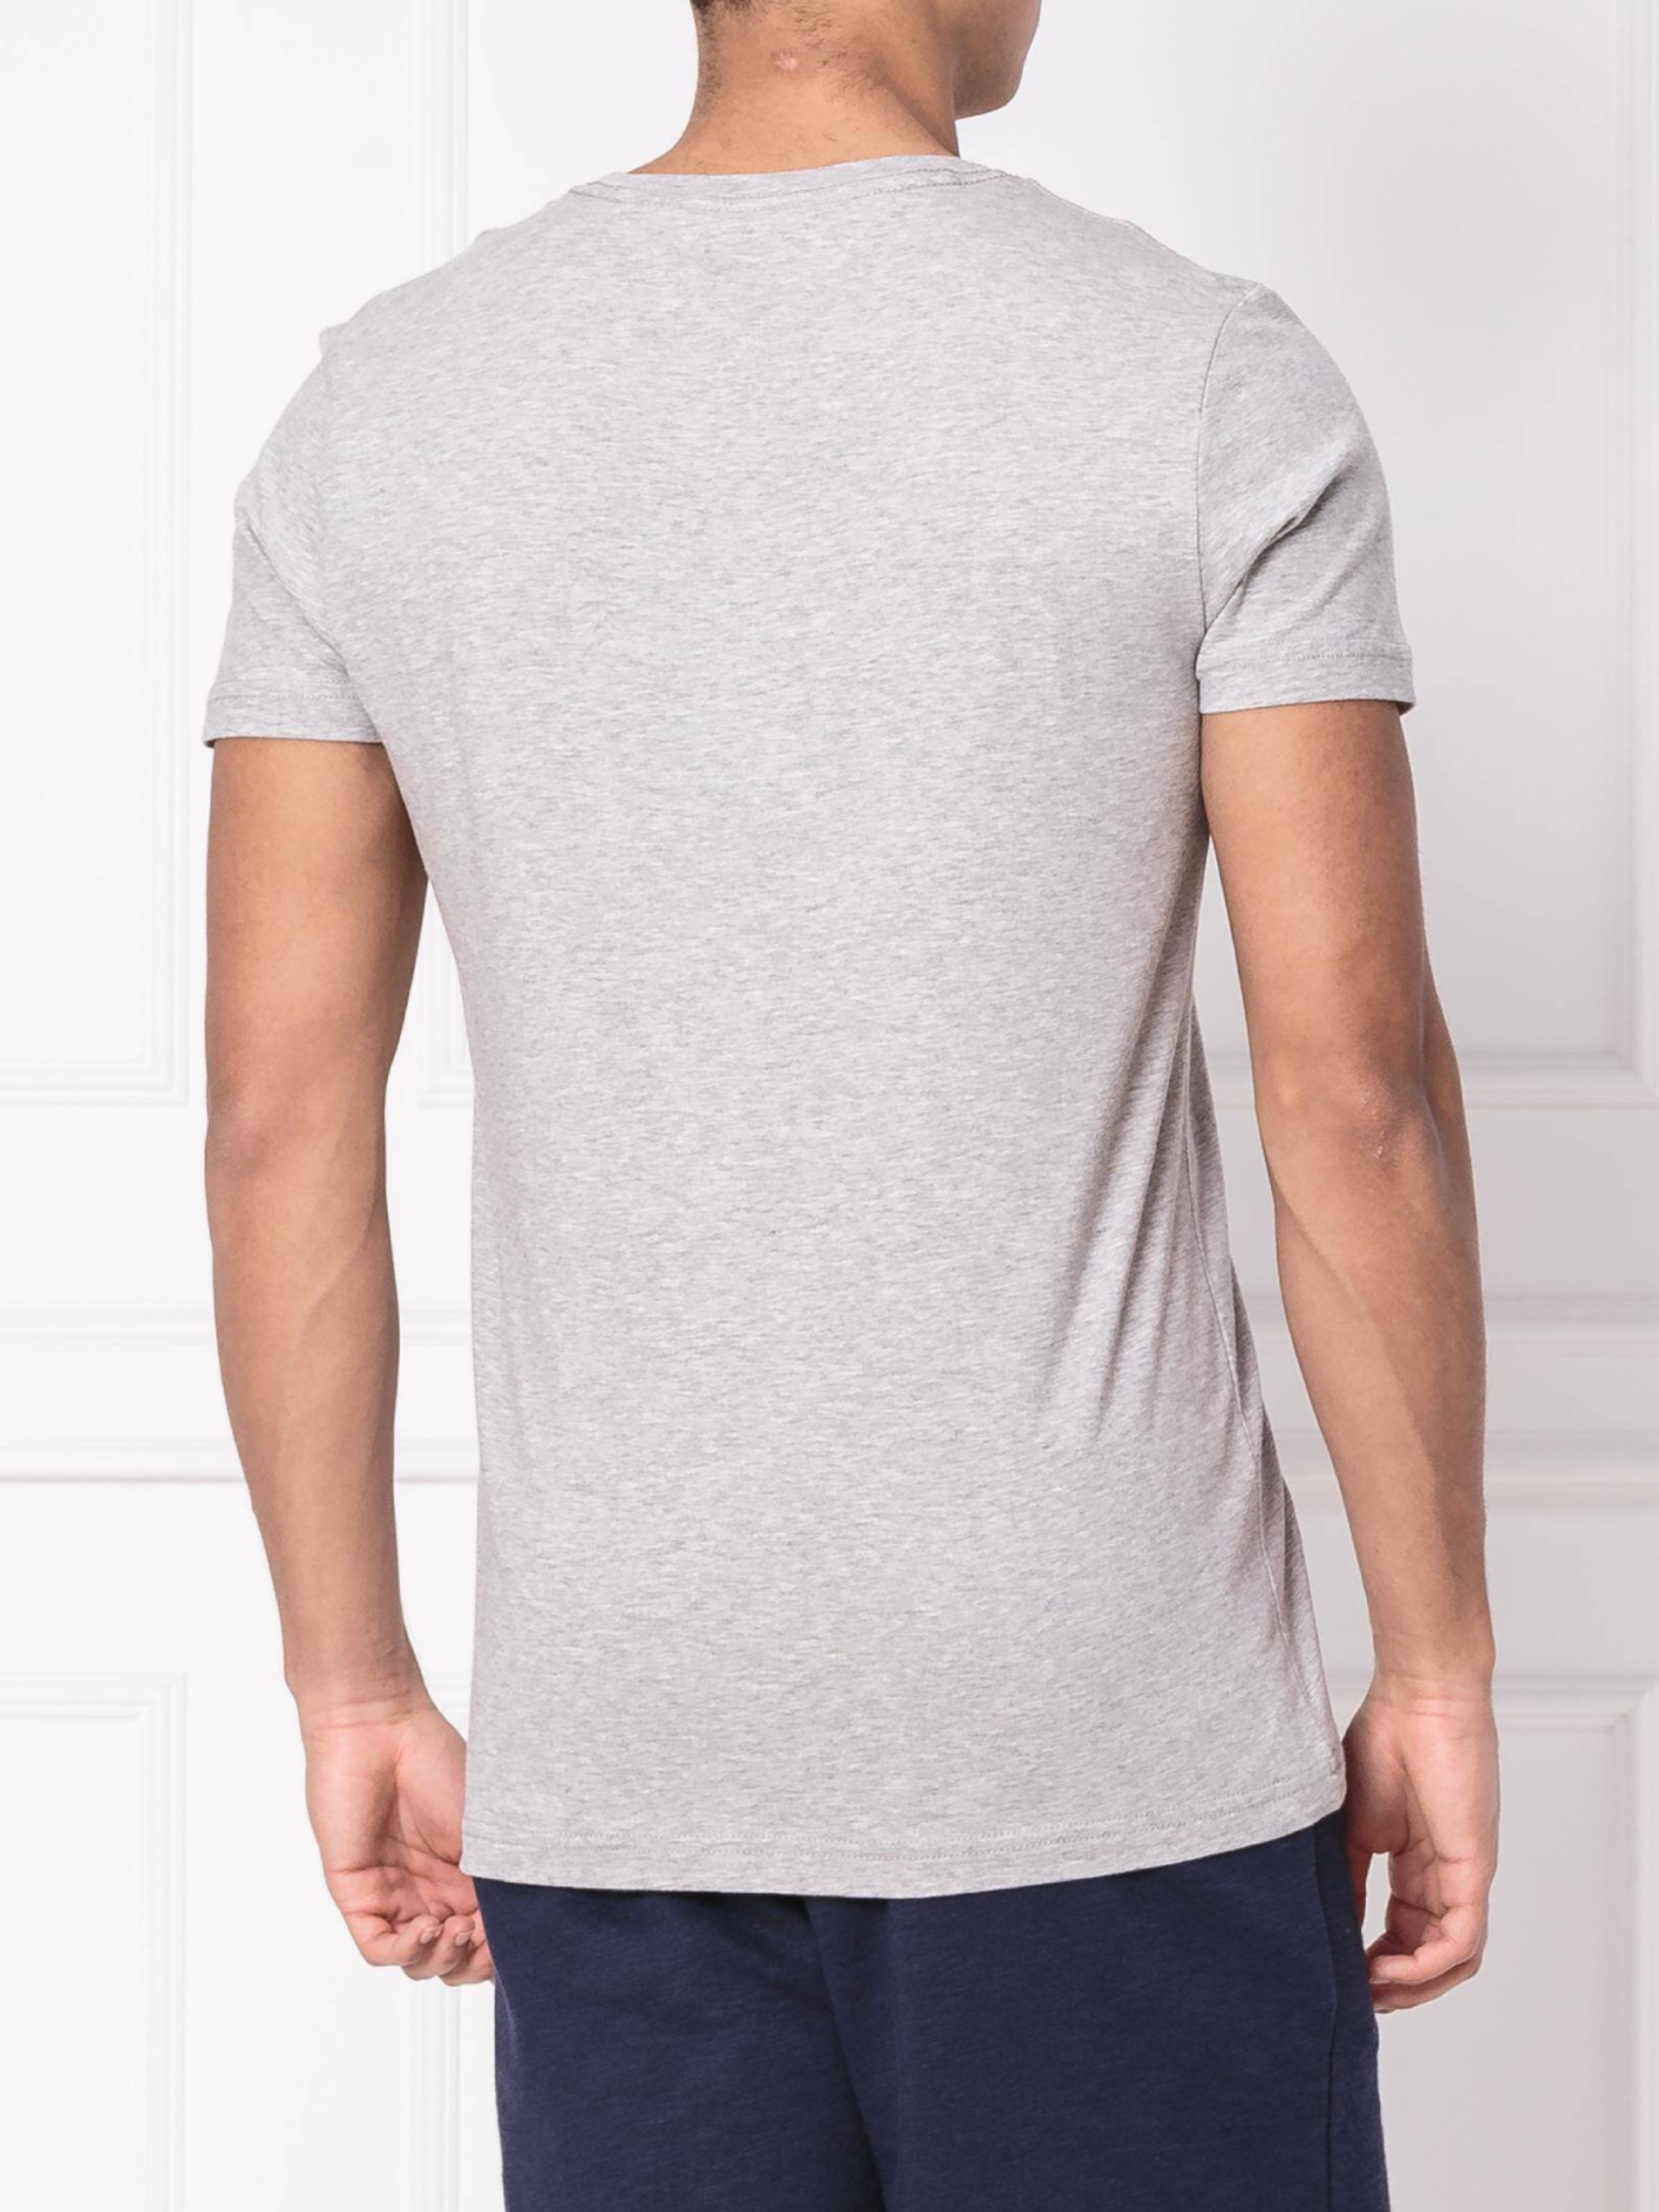 Tommy Hilfiger pánské šedé tričko - S (501)